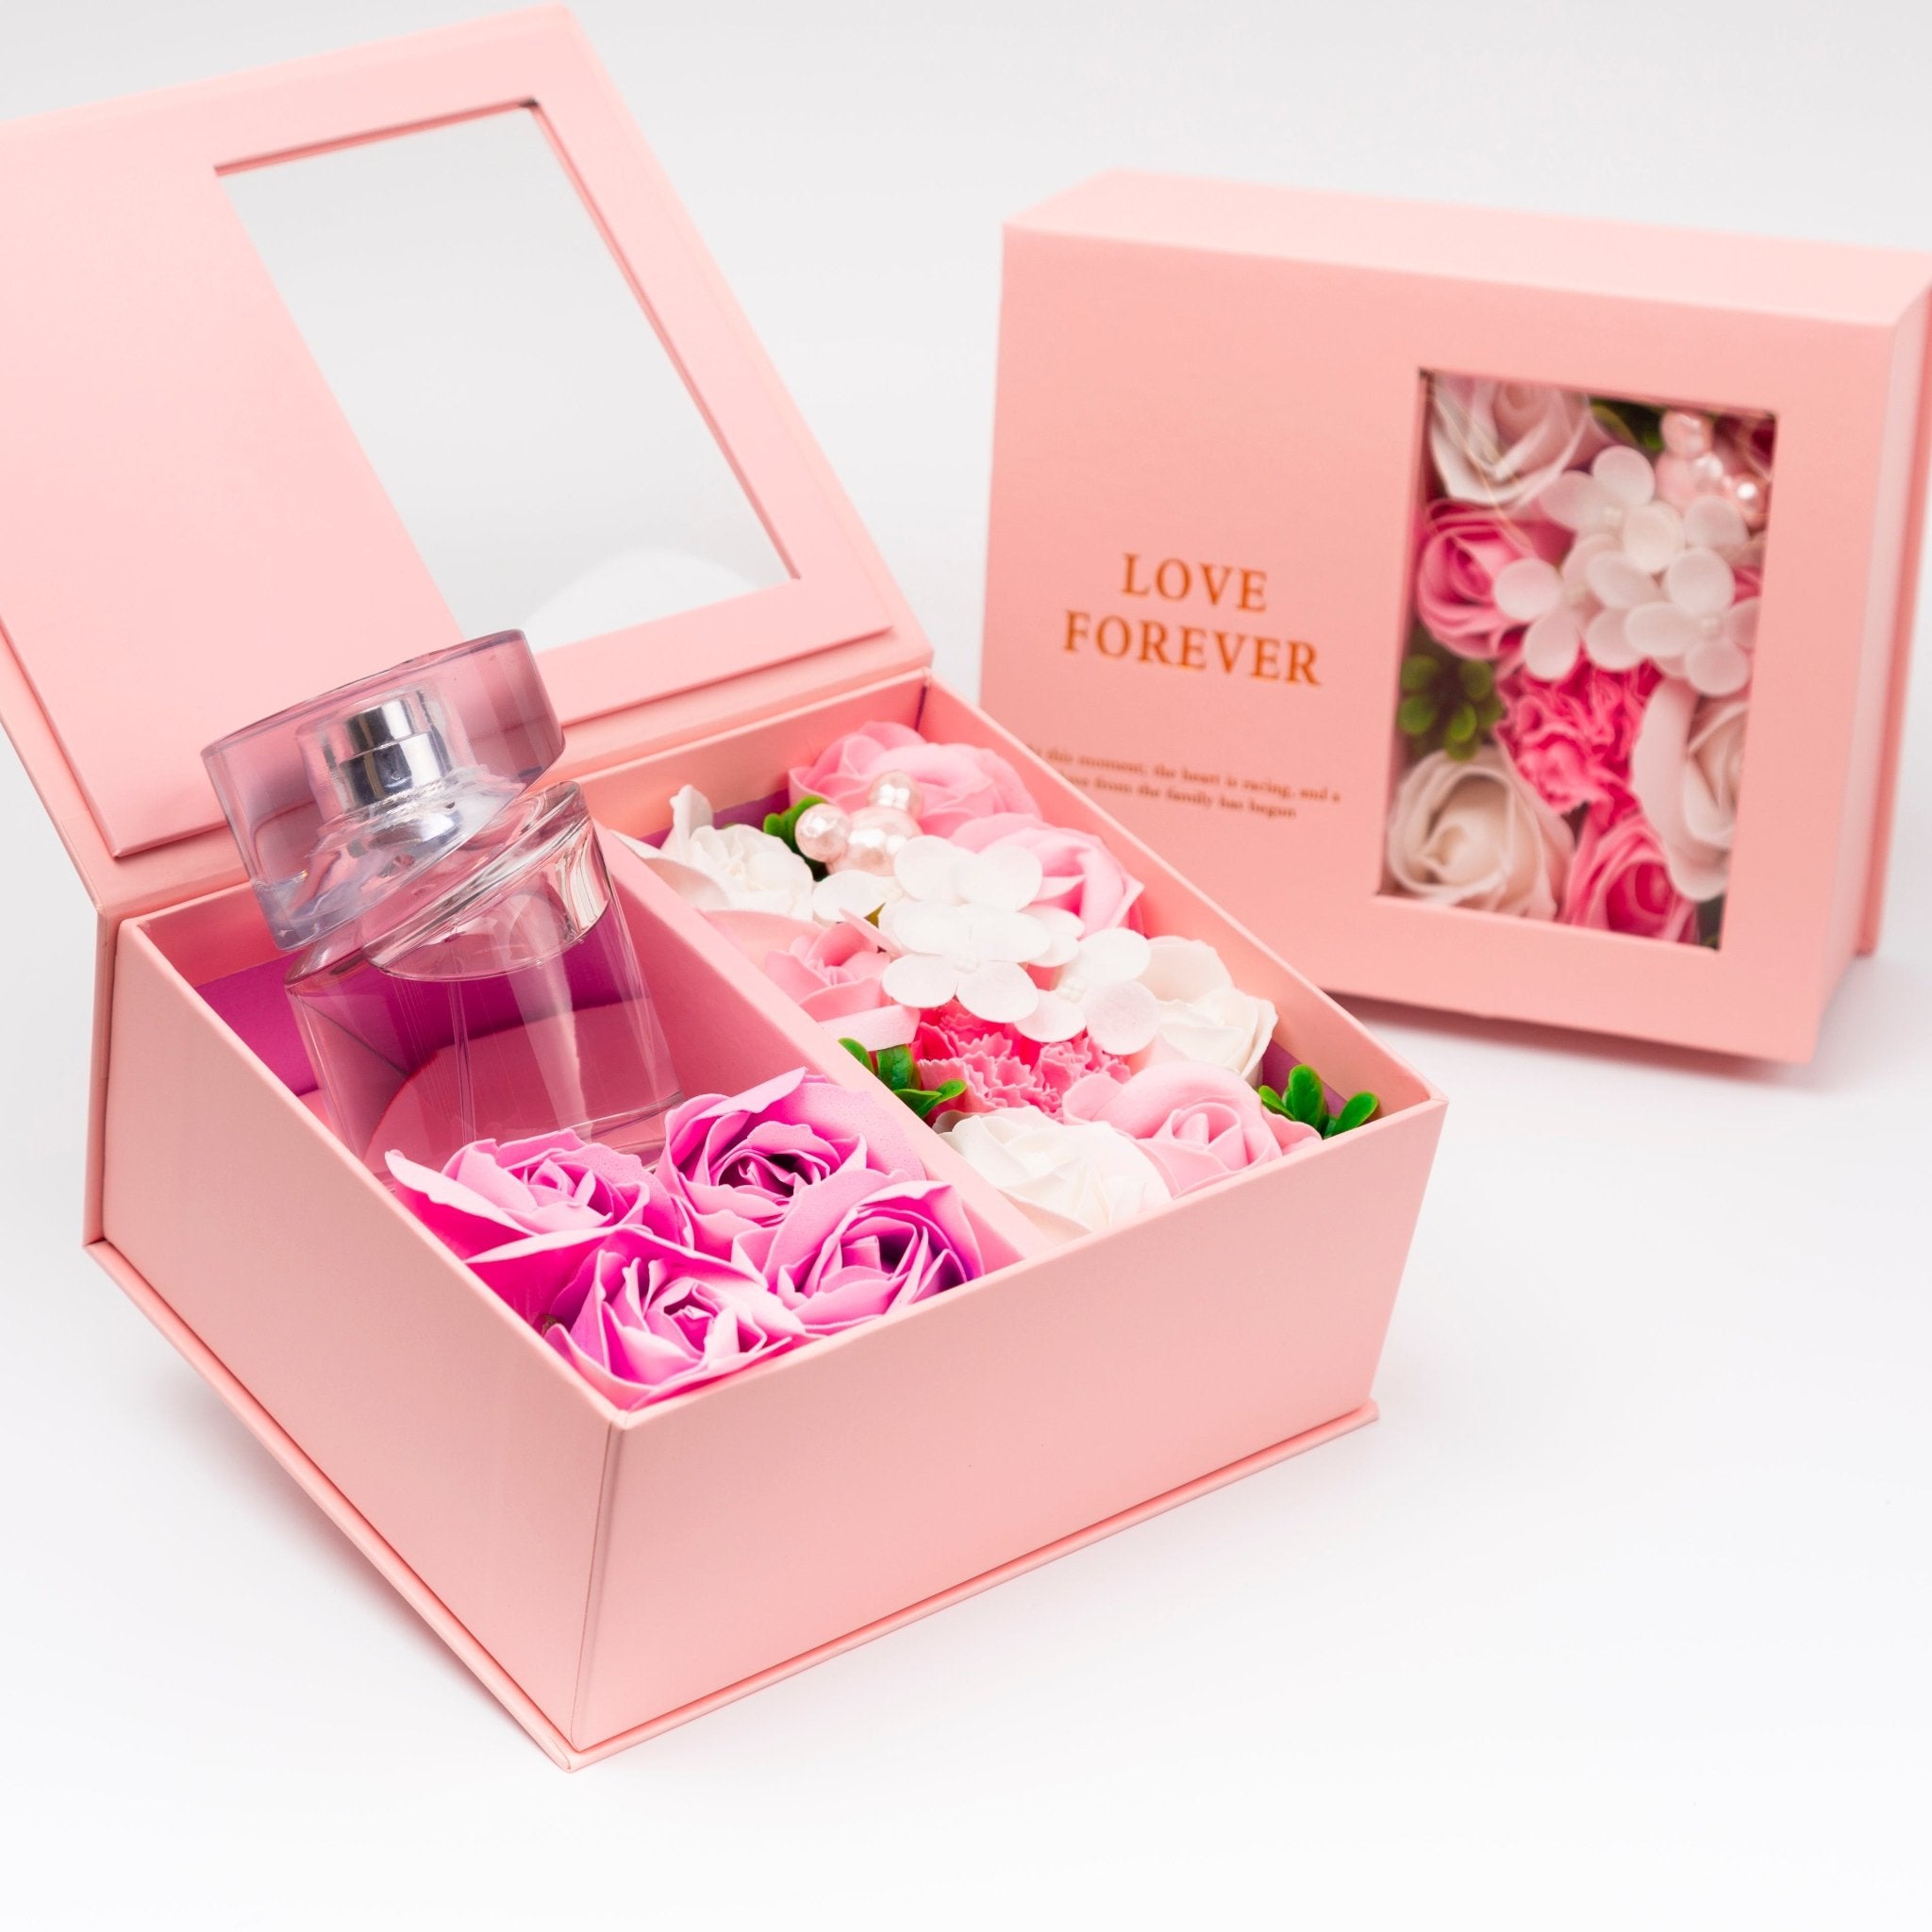 Flower Box - Perfume Gift For Women 21 - #shoFlower Box - Perfume Gift For Women 21p_name#Flower Box - Perfume Gift For Women 21Gift Boxes & TinsTakreemTakreem.joWomenPerfumeFlower Box - Perfume Gift For Women 21 - Takreem.jo